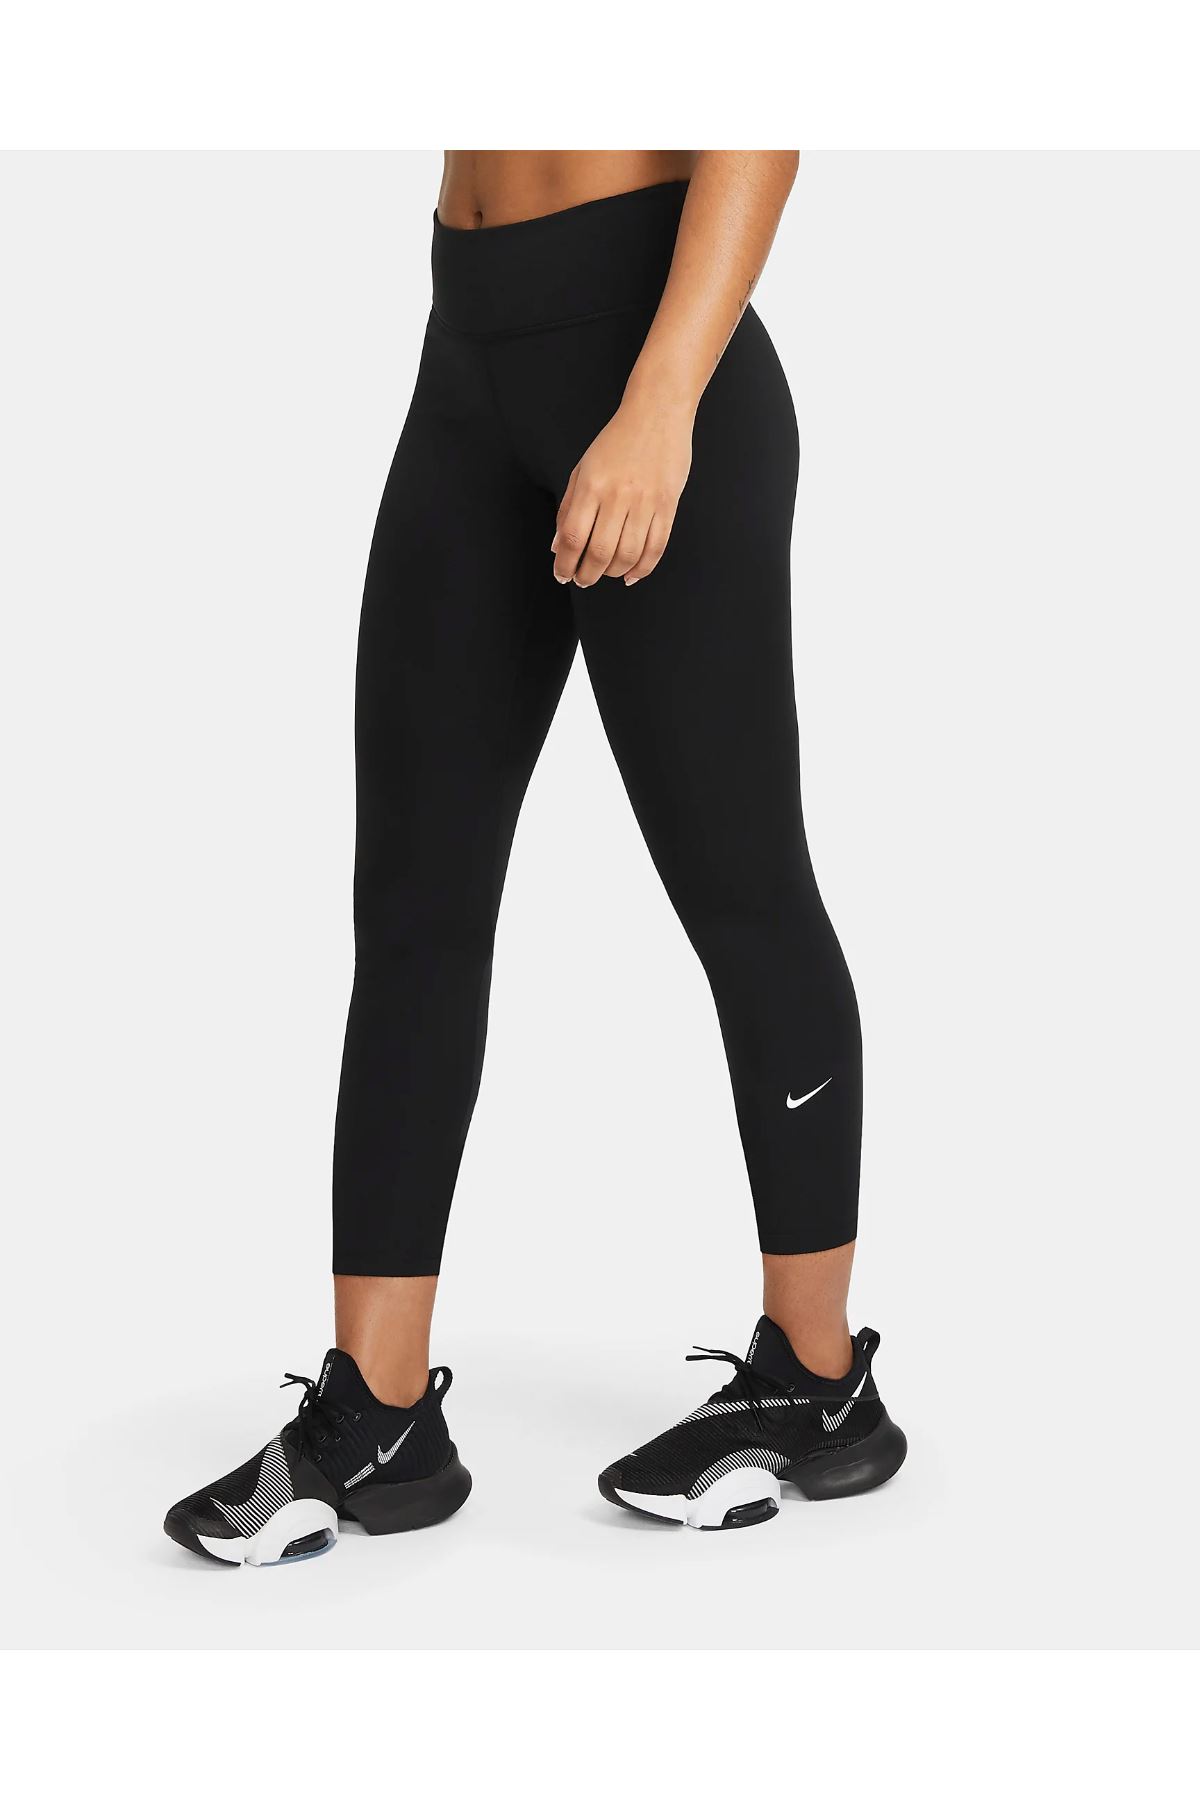 Nike One Kadın Siyah Tayt - DD0247-010